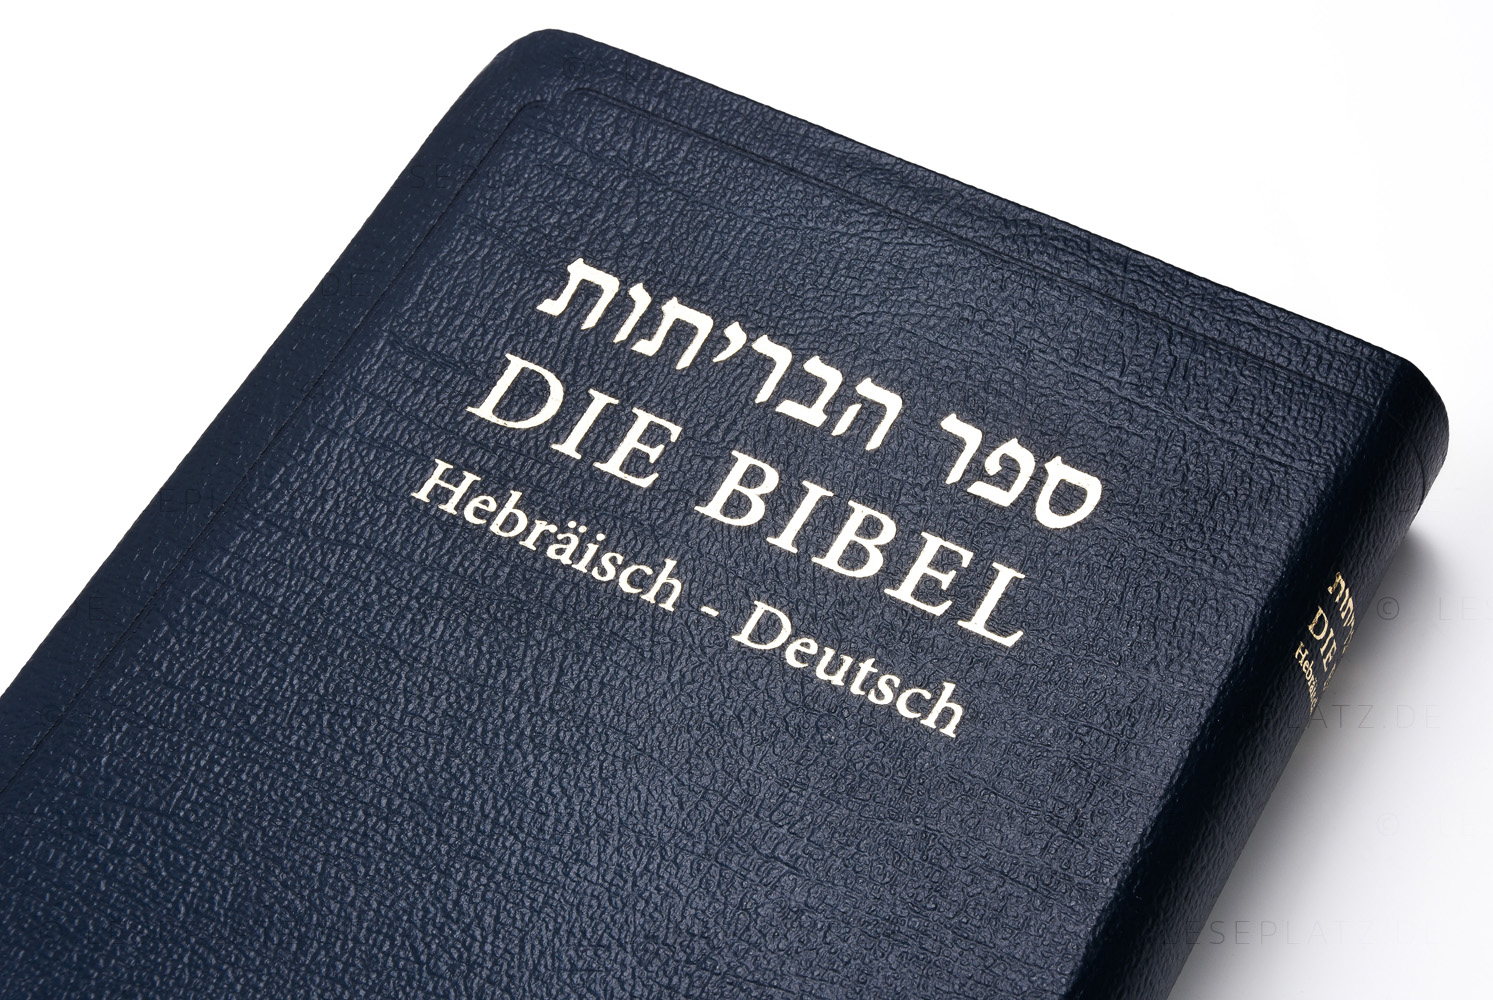 Die Bibel - Hebräisch-Deutsch (Leder / Goldschnitt)